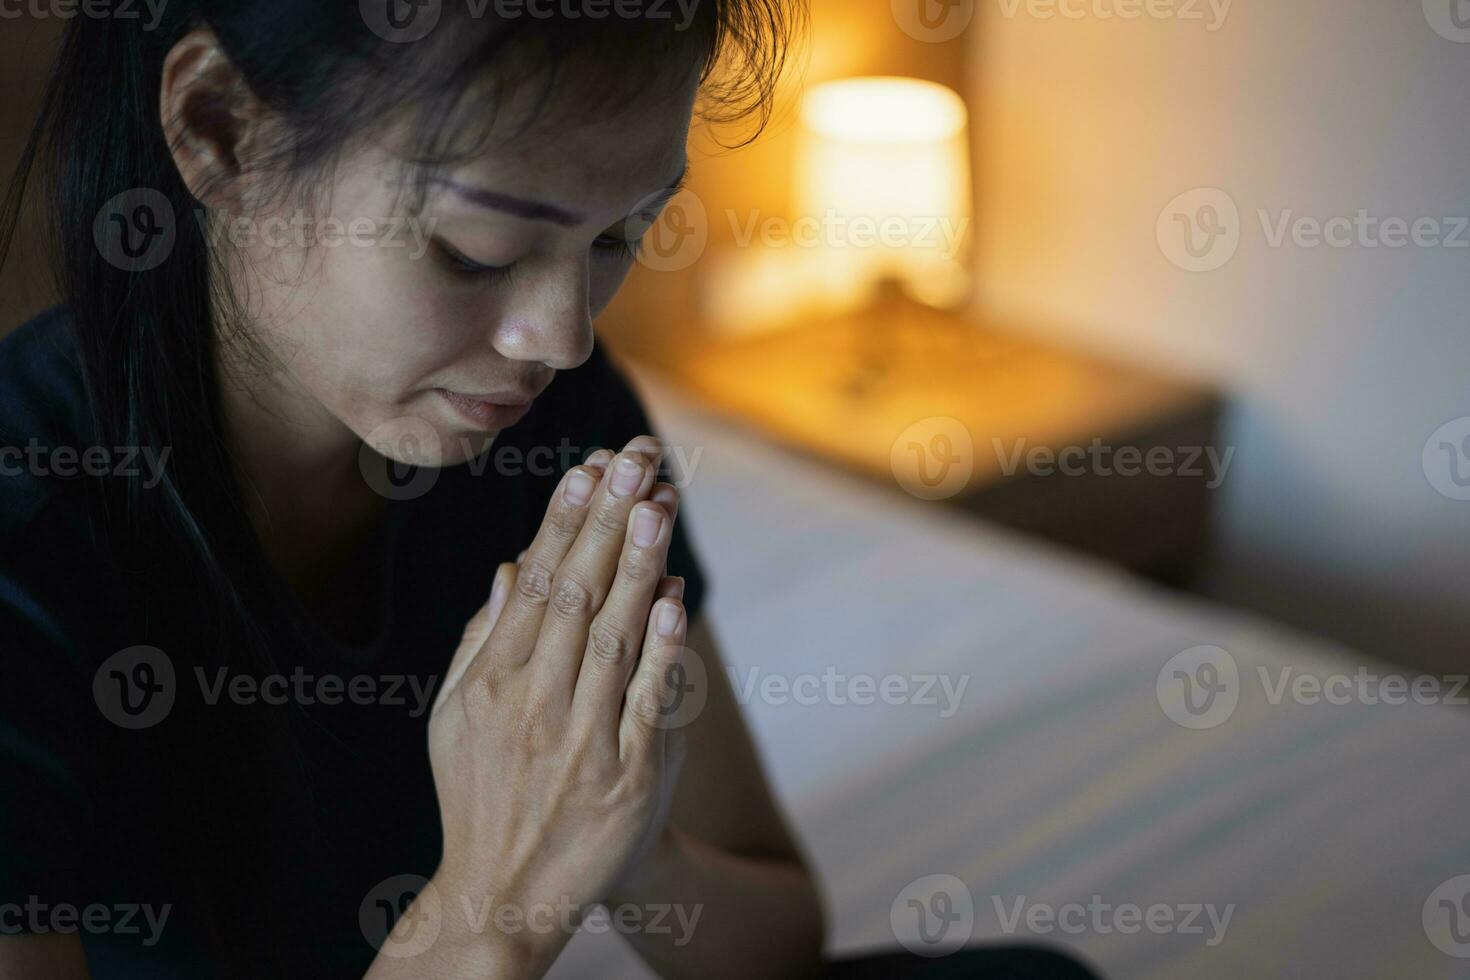 manos dobladas en concepto de oración por la fe, joven religiosa rezando a dios por la mañana, espiritualidad y religión, conceptos religiosos. foto